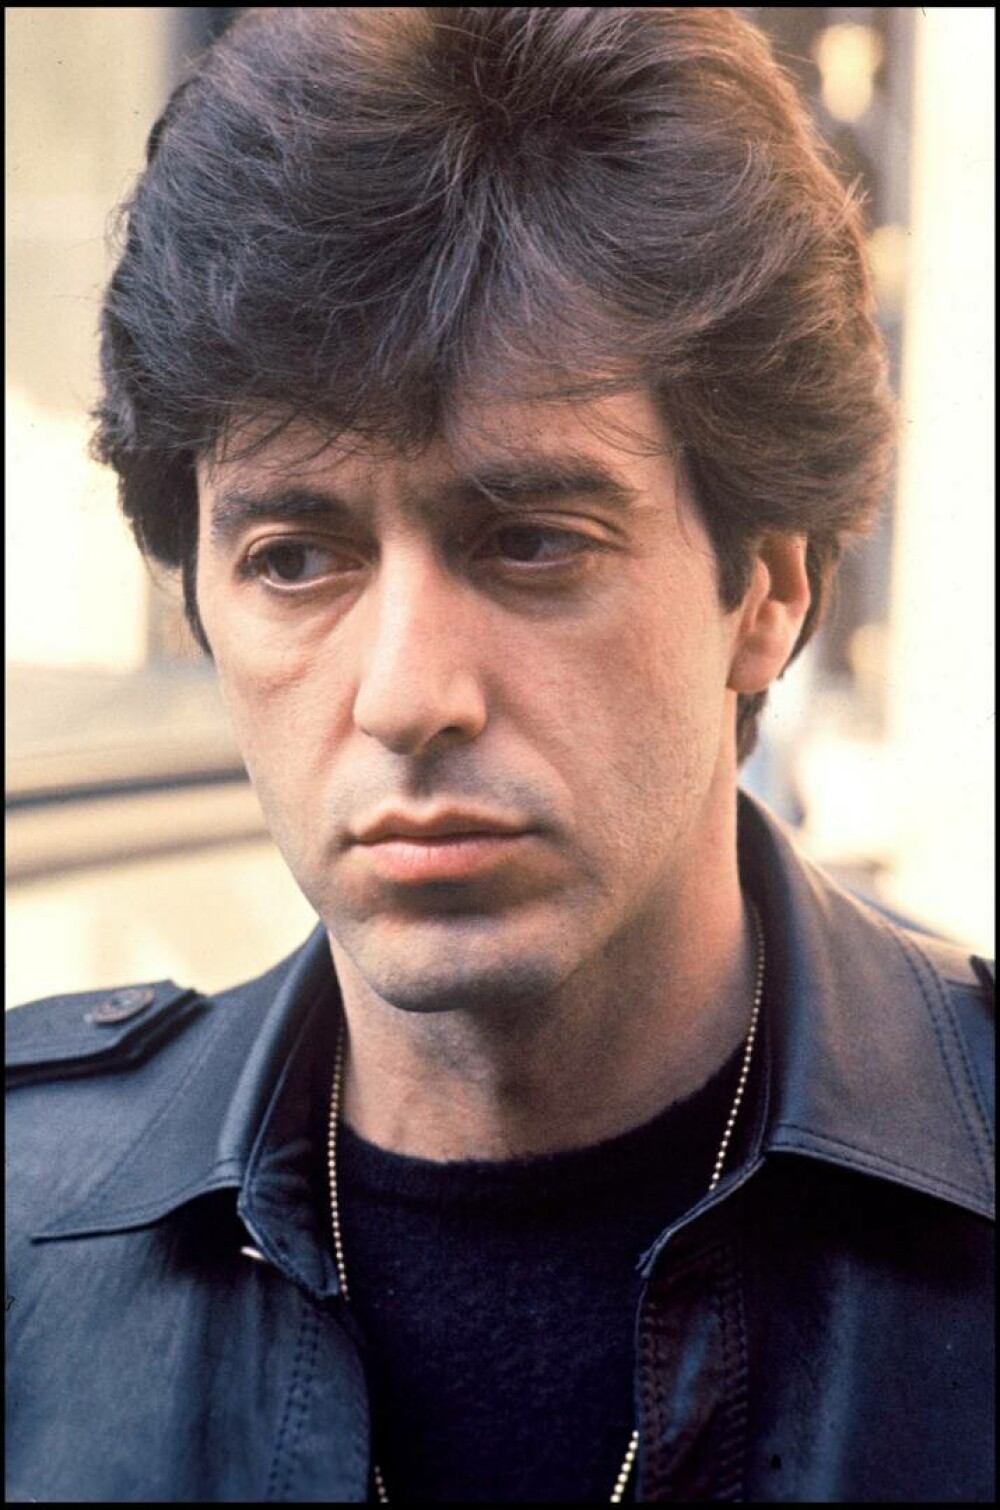 Al Pacino împlinește 84 de ani. Detaliile neștiute despre viața celebrului actor. GALERIE FOTO - Imaginea 9